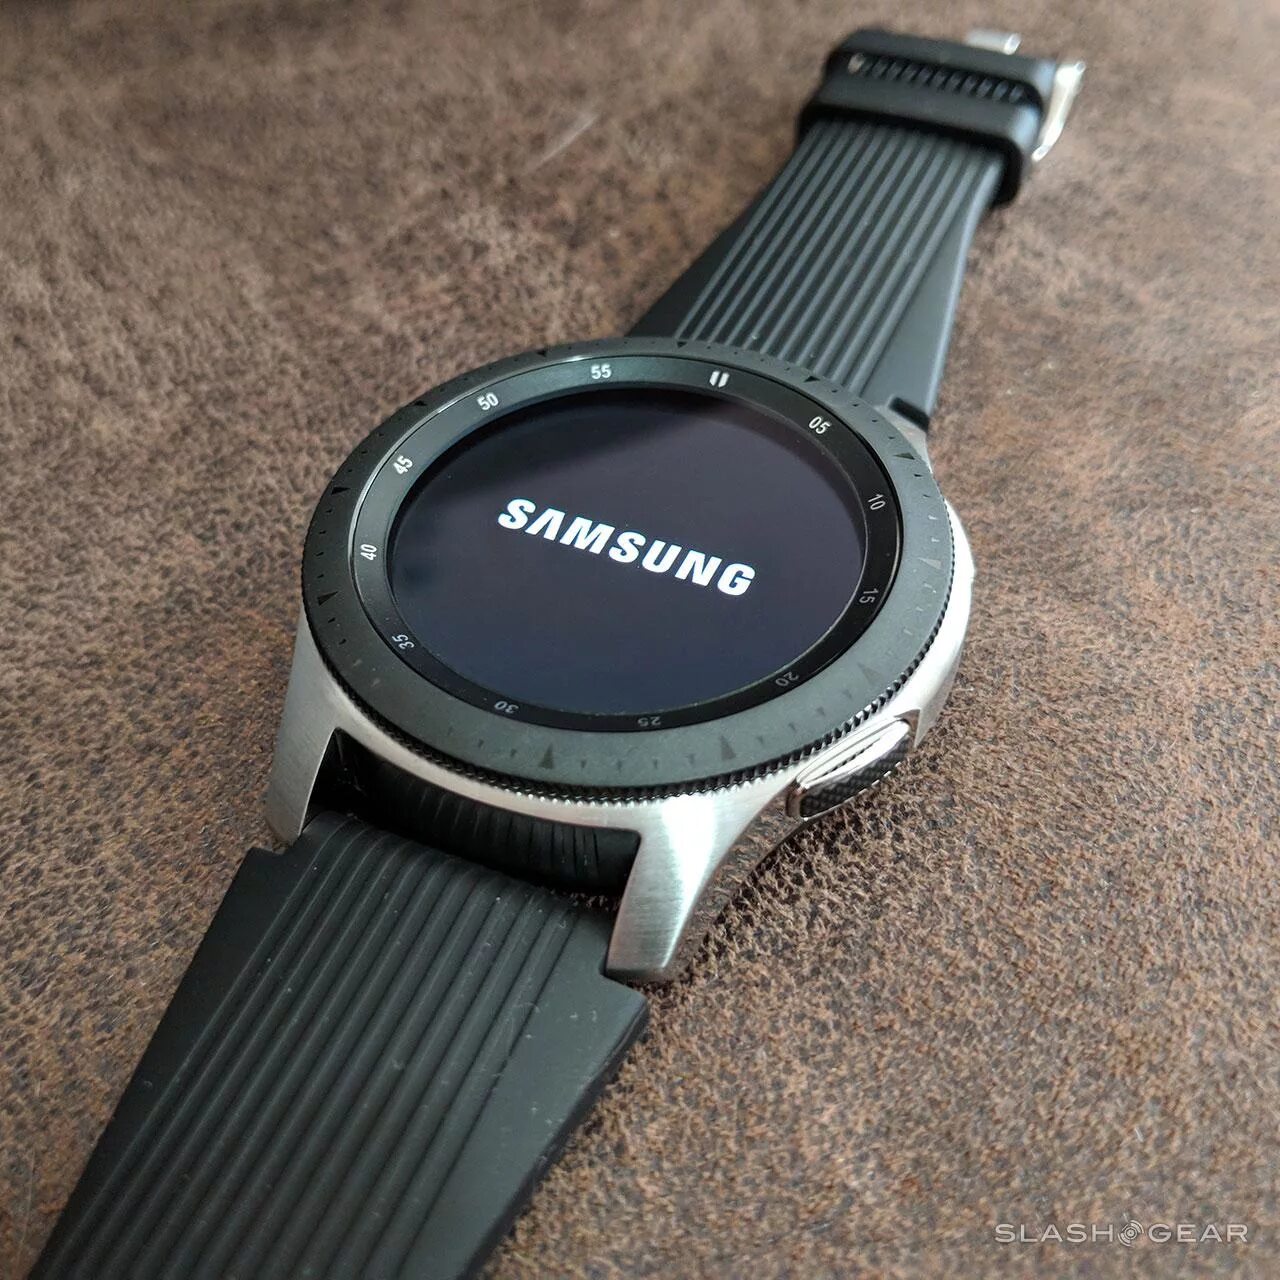 Samsung Galaxy watch r800. Samsung Galaxy watch SM-r800. Samsung Galaxy watch 46mm SM-r800 Silver. Samsung Galaxy watch 46mm Silver r800. Samsung watch r800